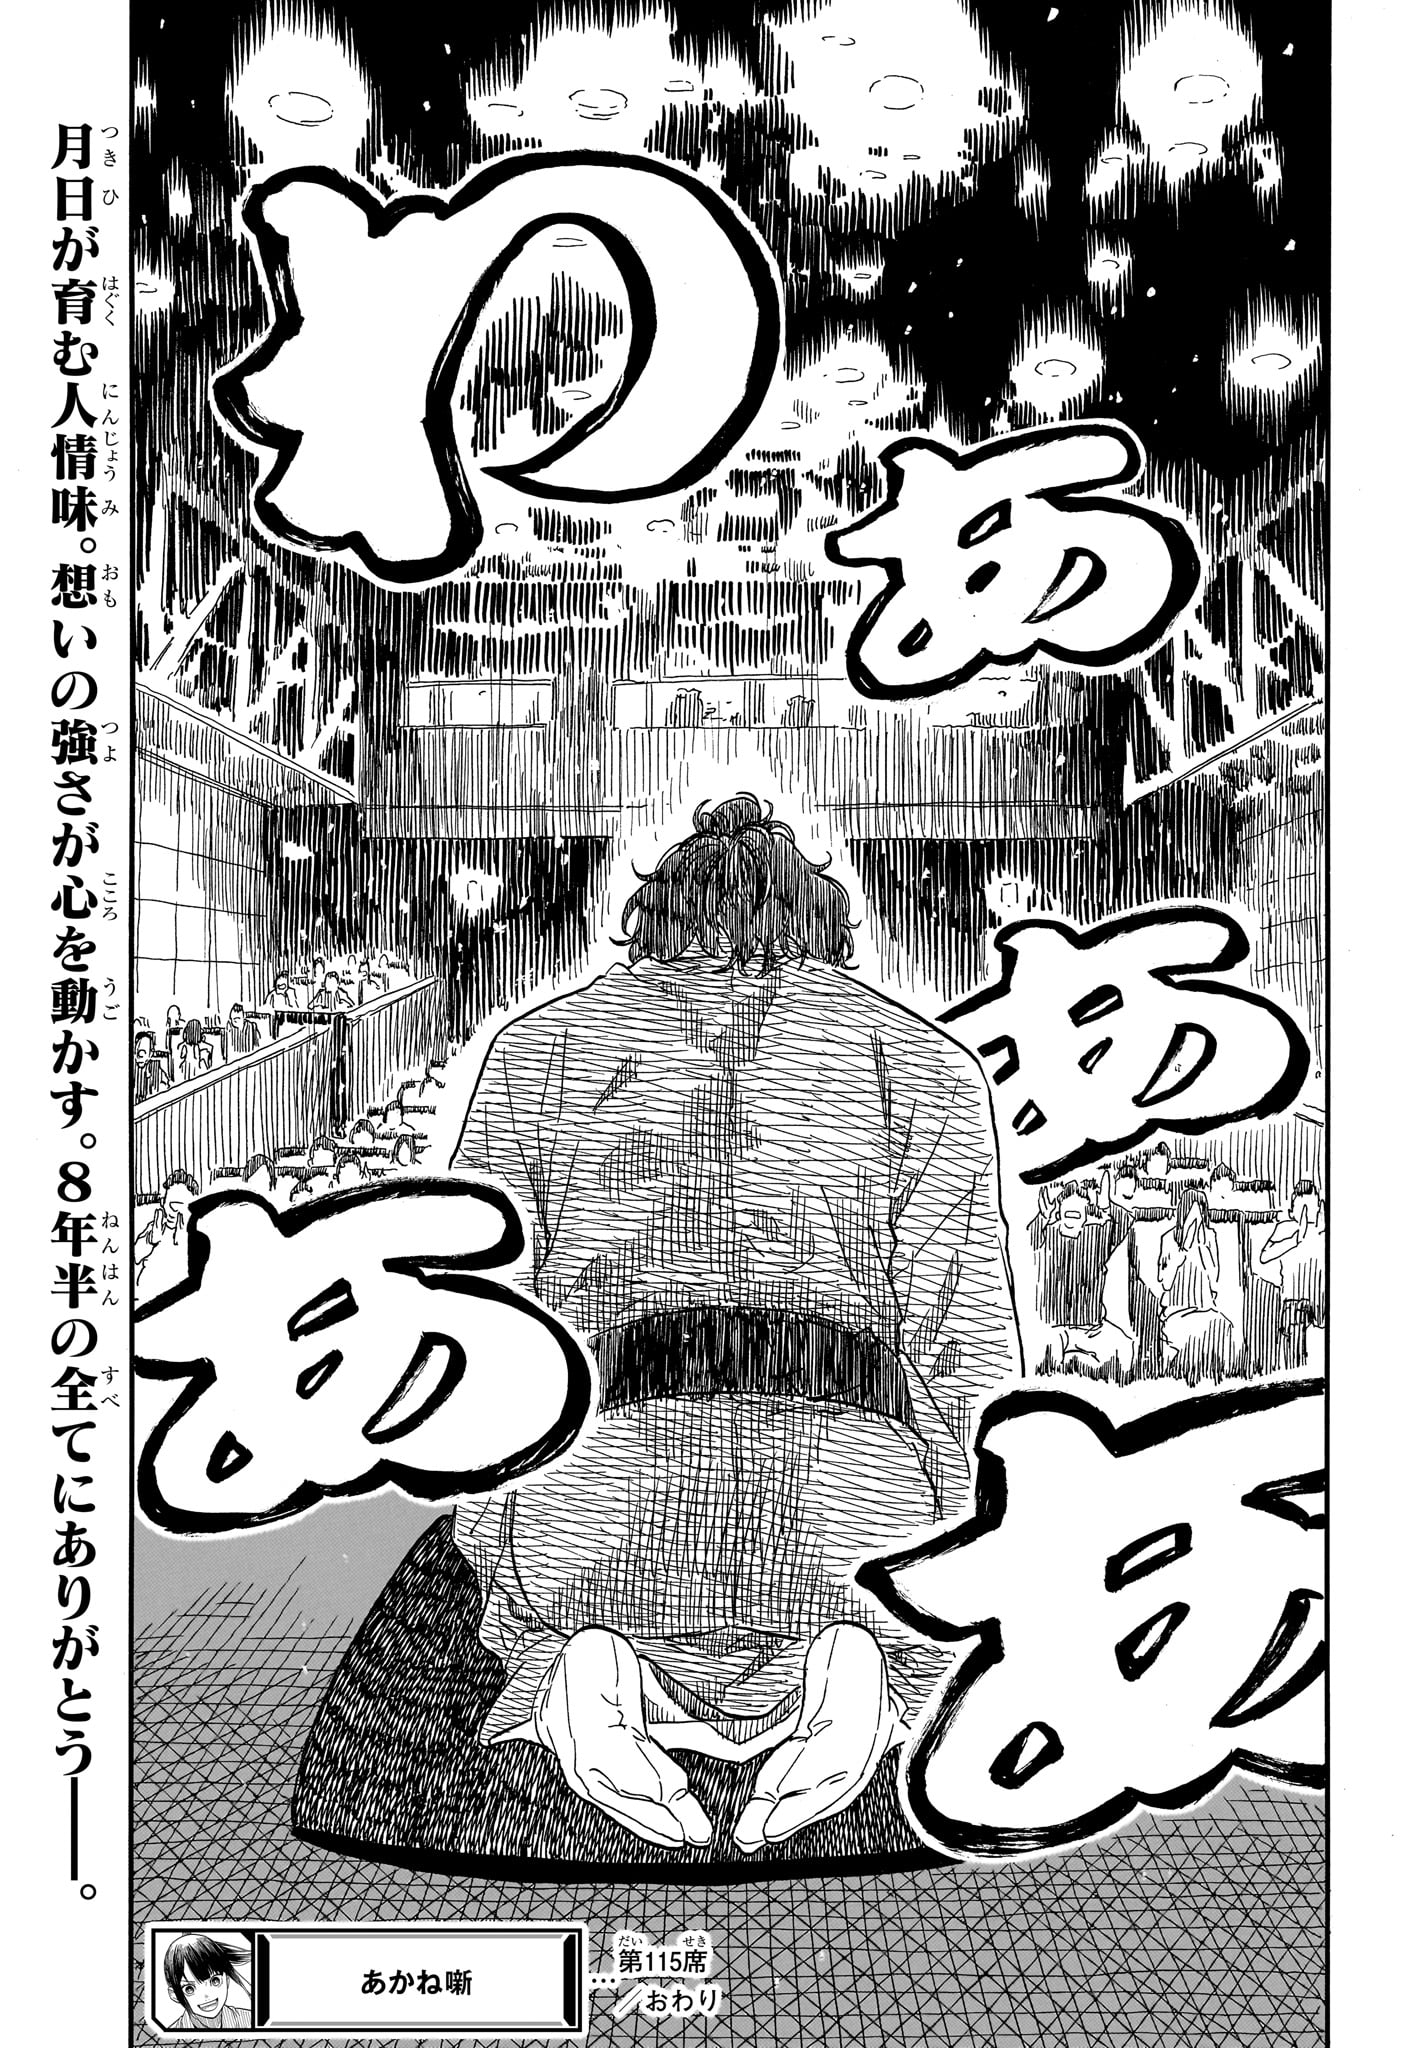 Akane-Banashi - Chapter 115 - Page 19